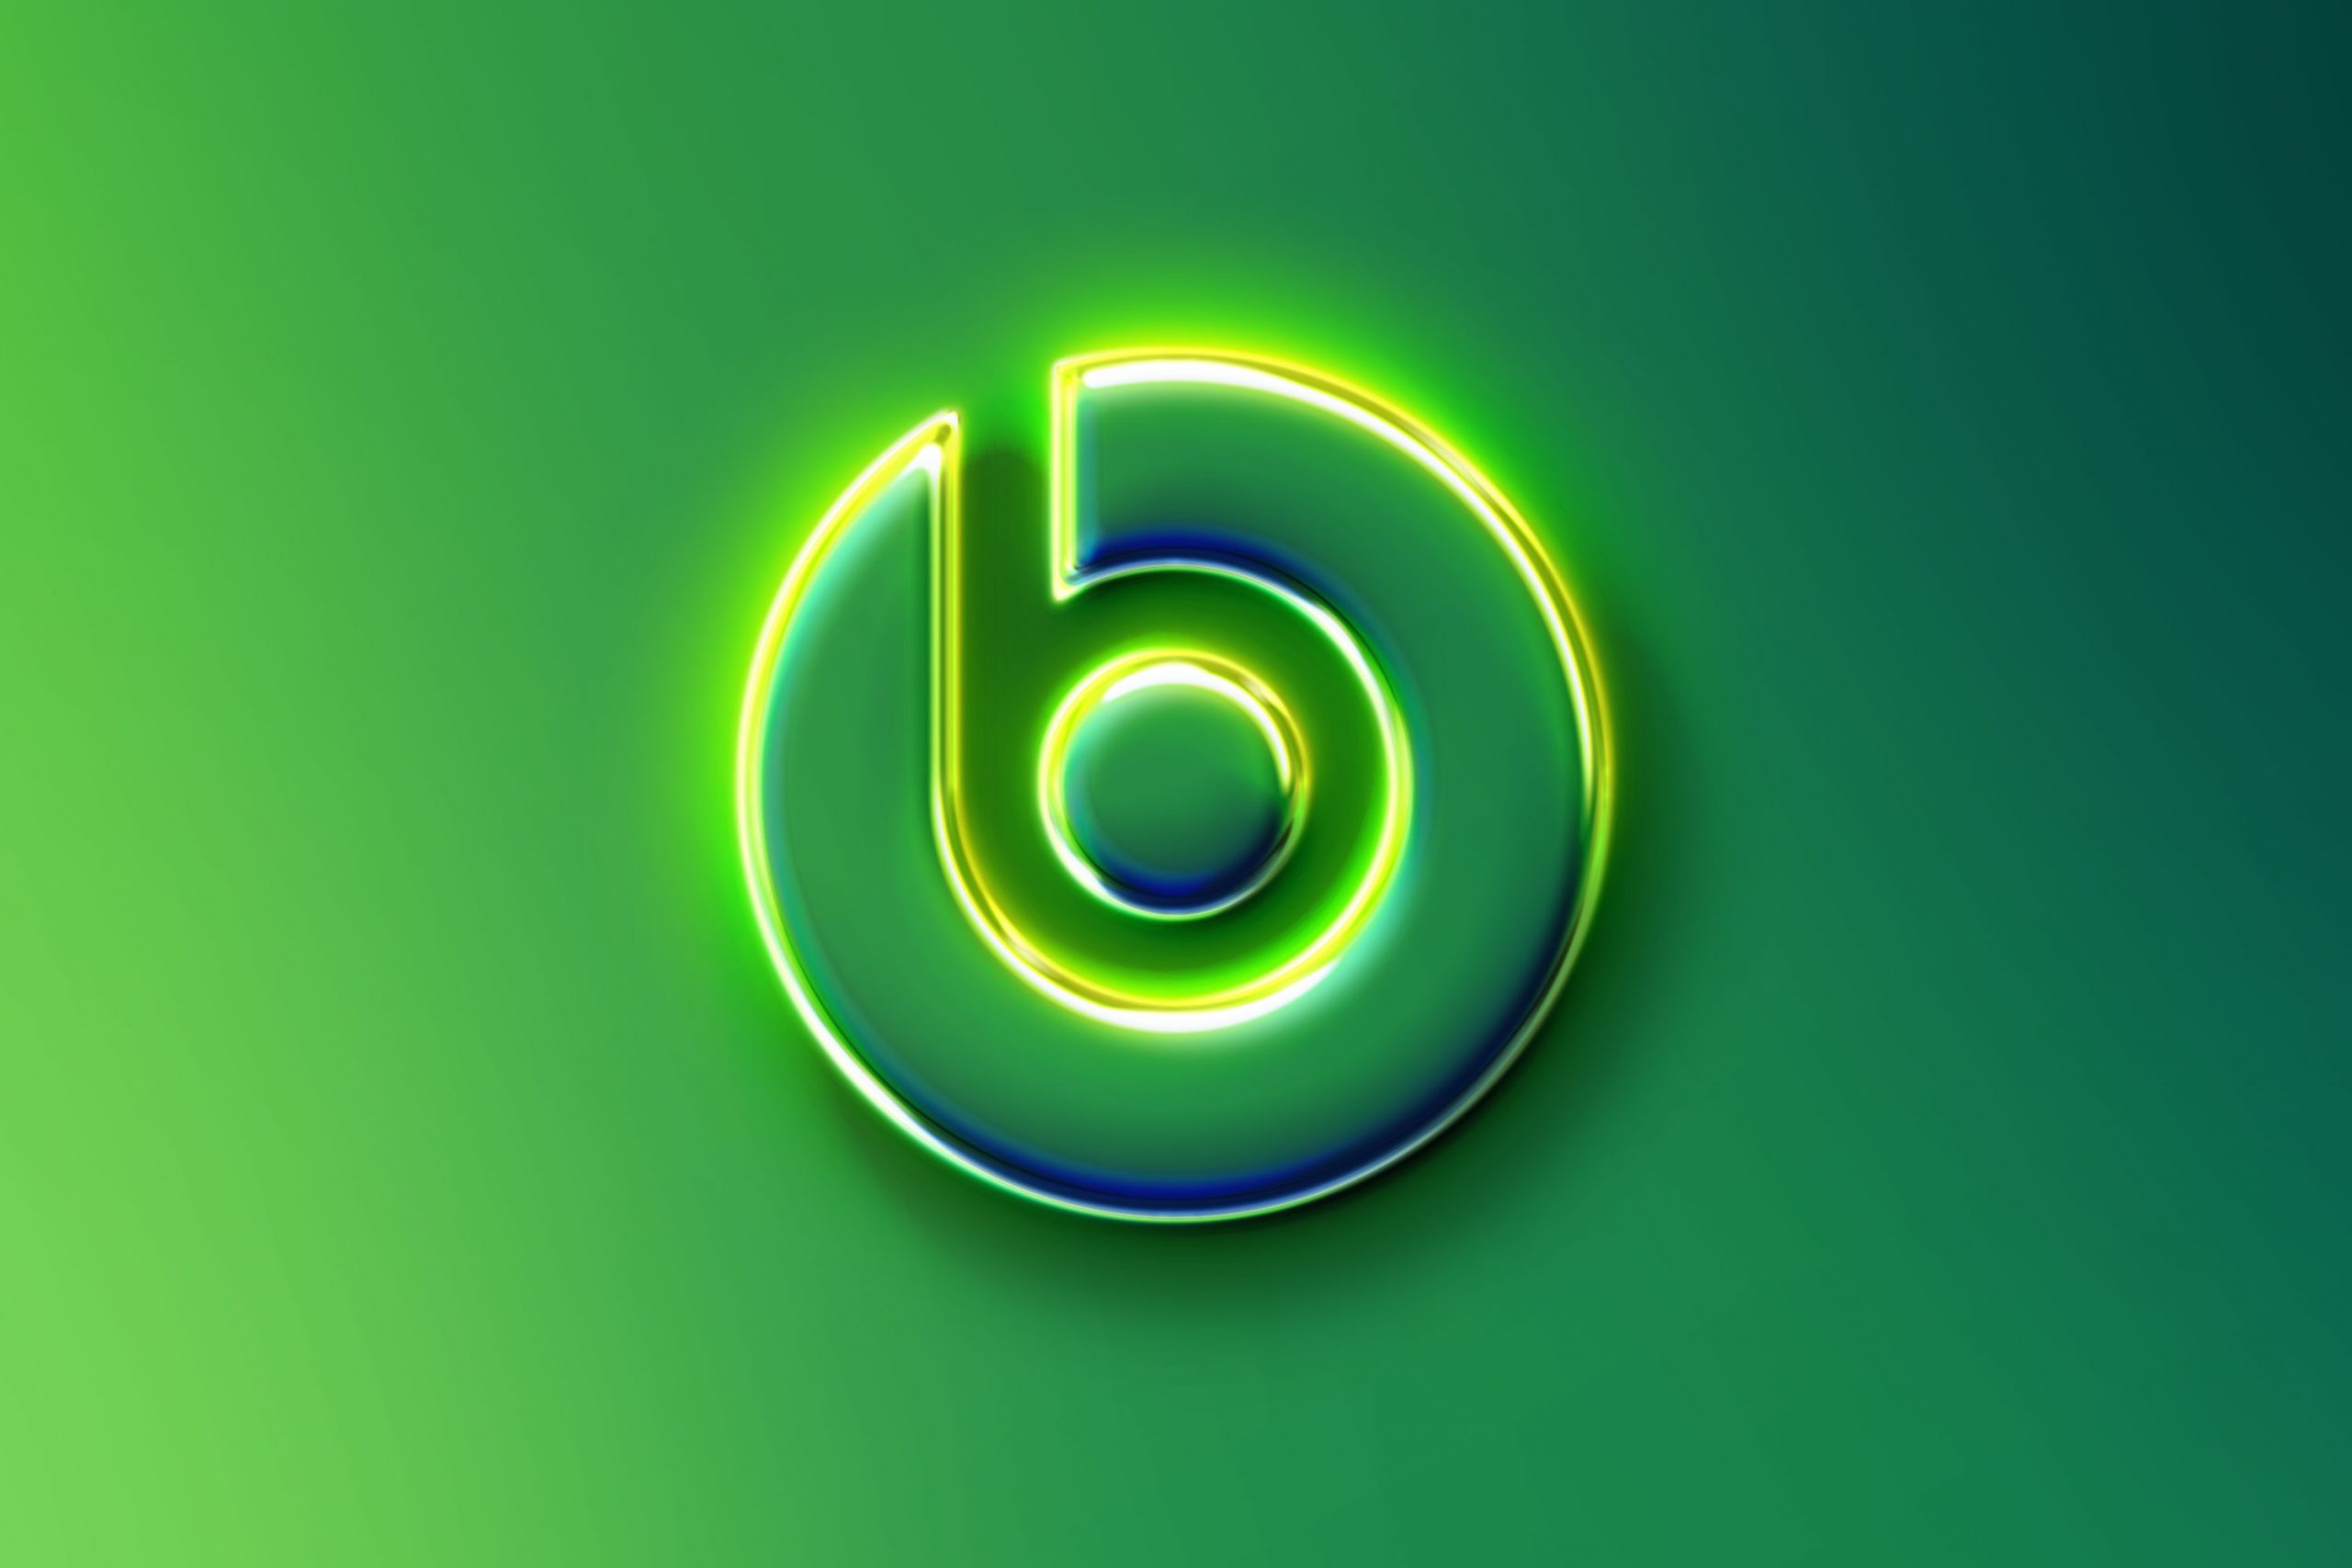 beats logo wallpaper green